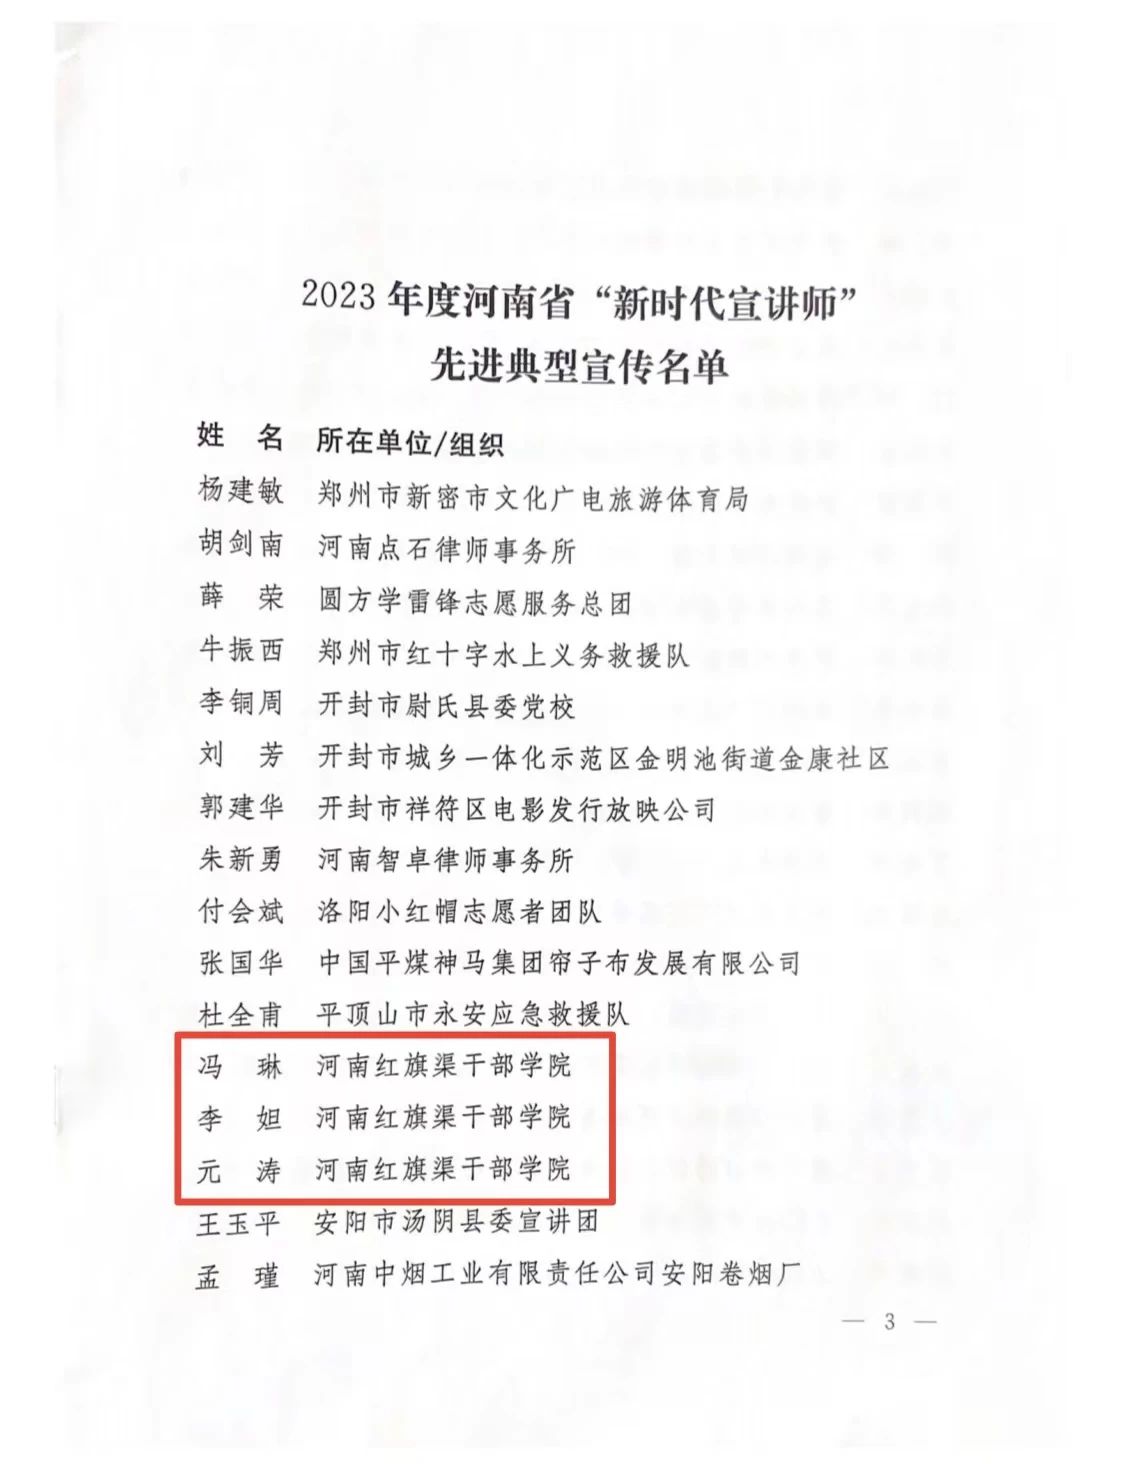 >我院教师获选2023年度河南省“新时代宣讲师”先进典型